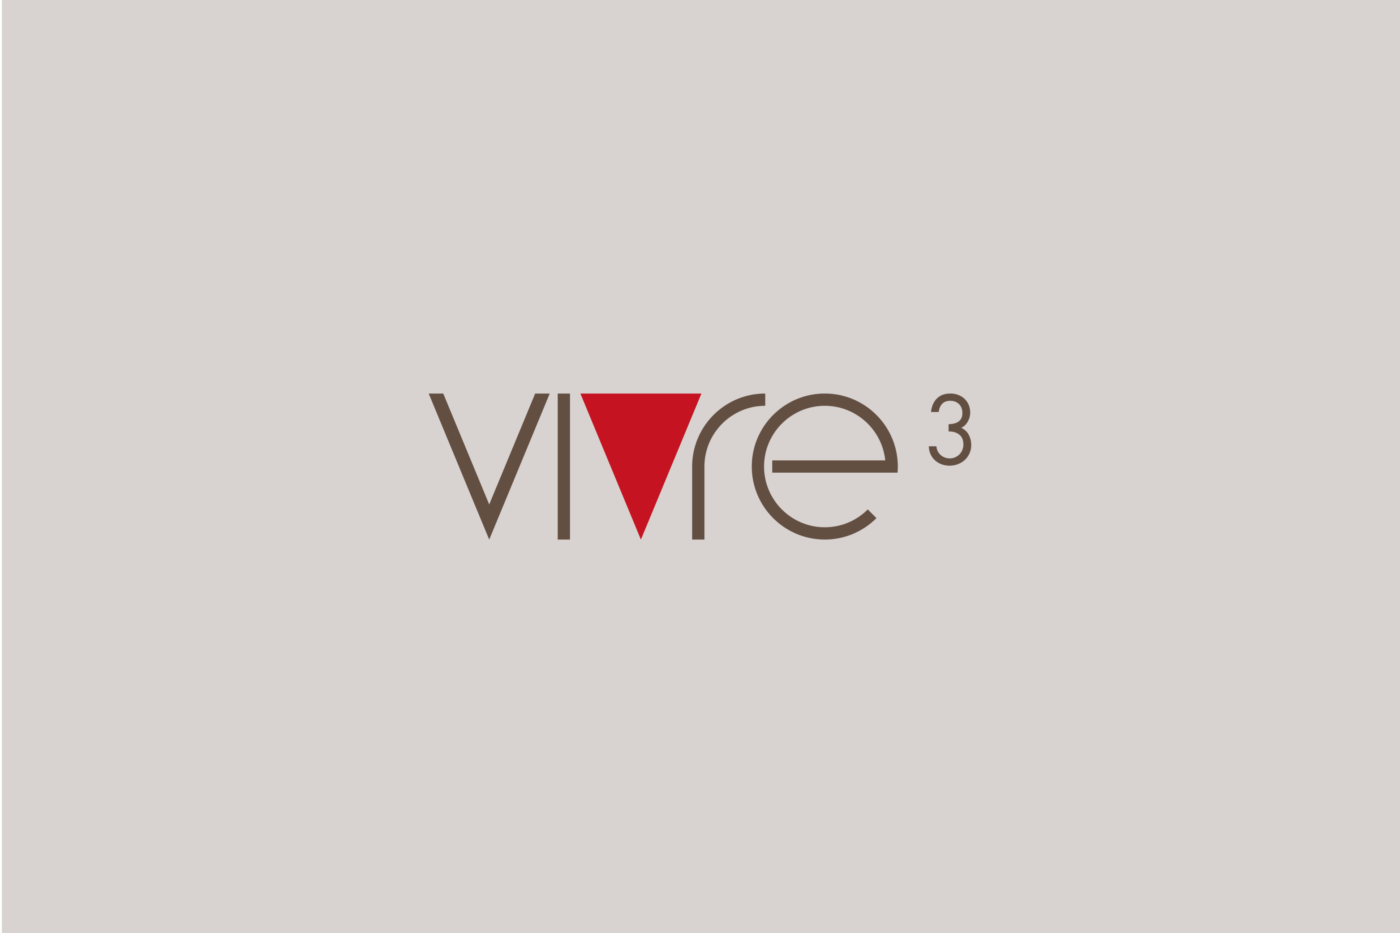 Logo Design für die Vivre3